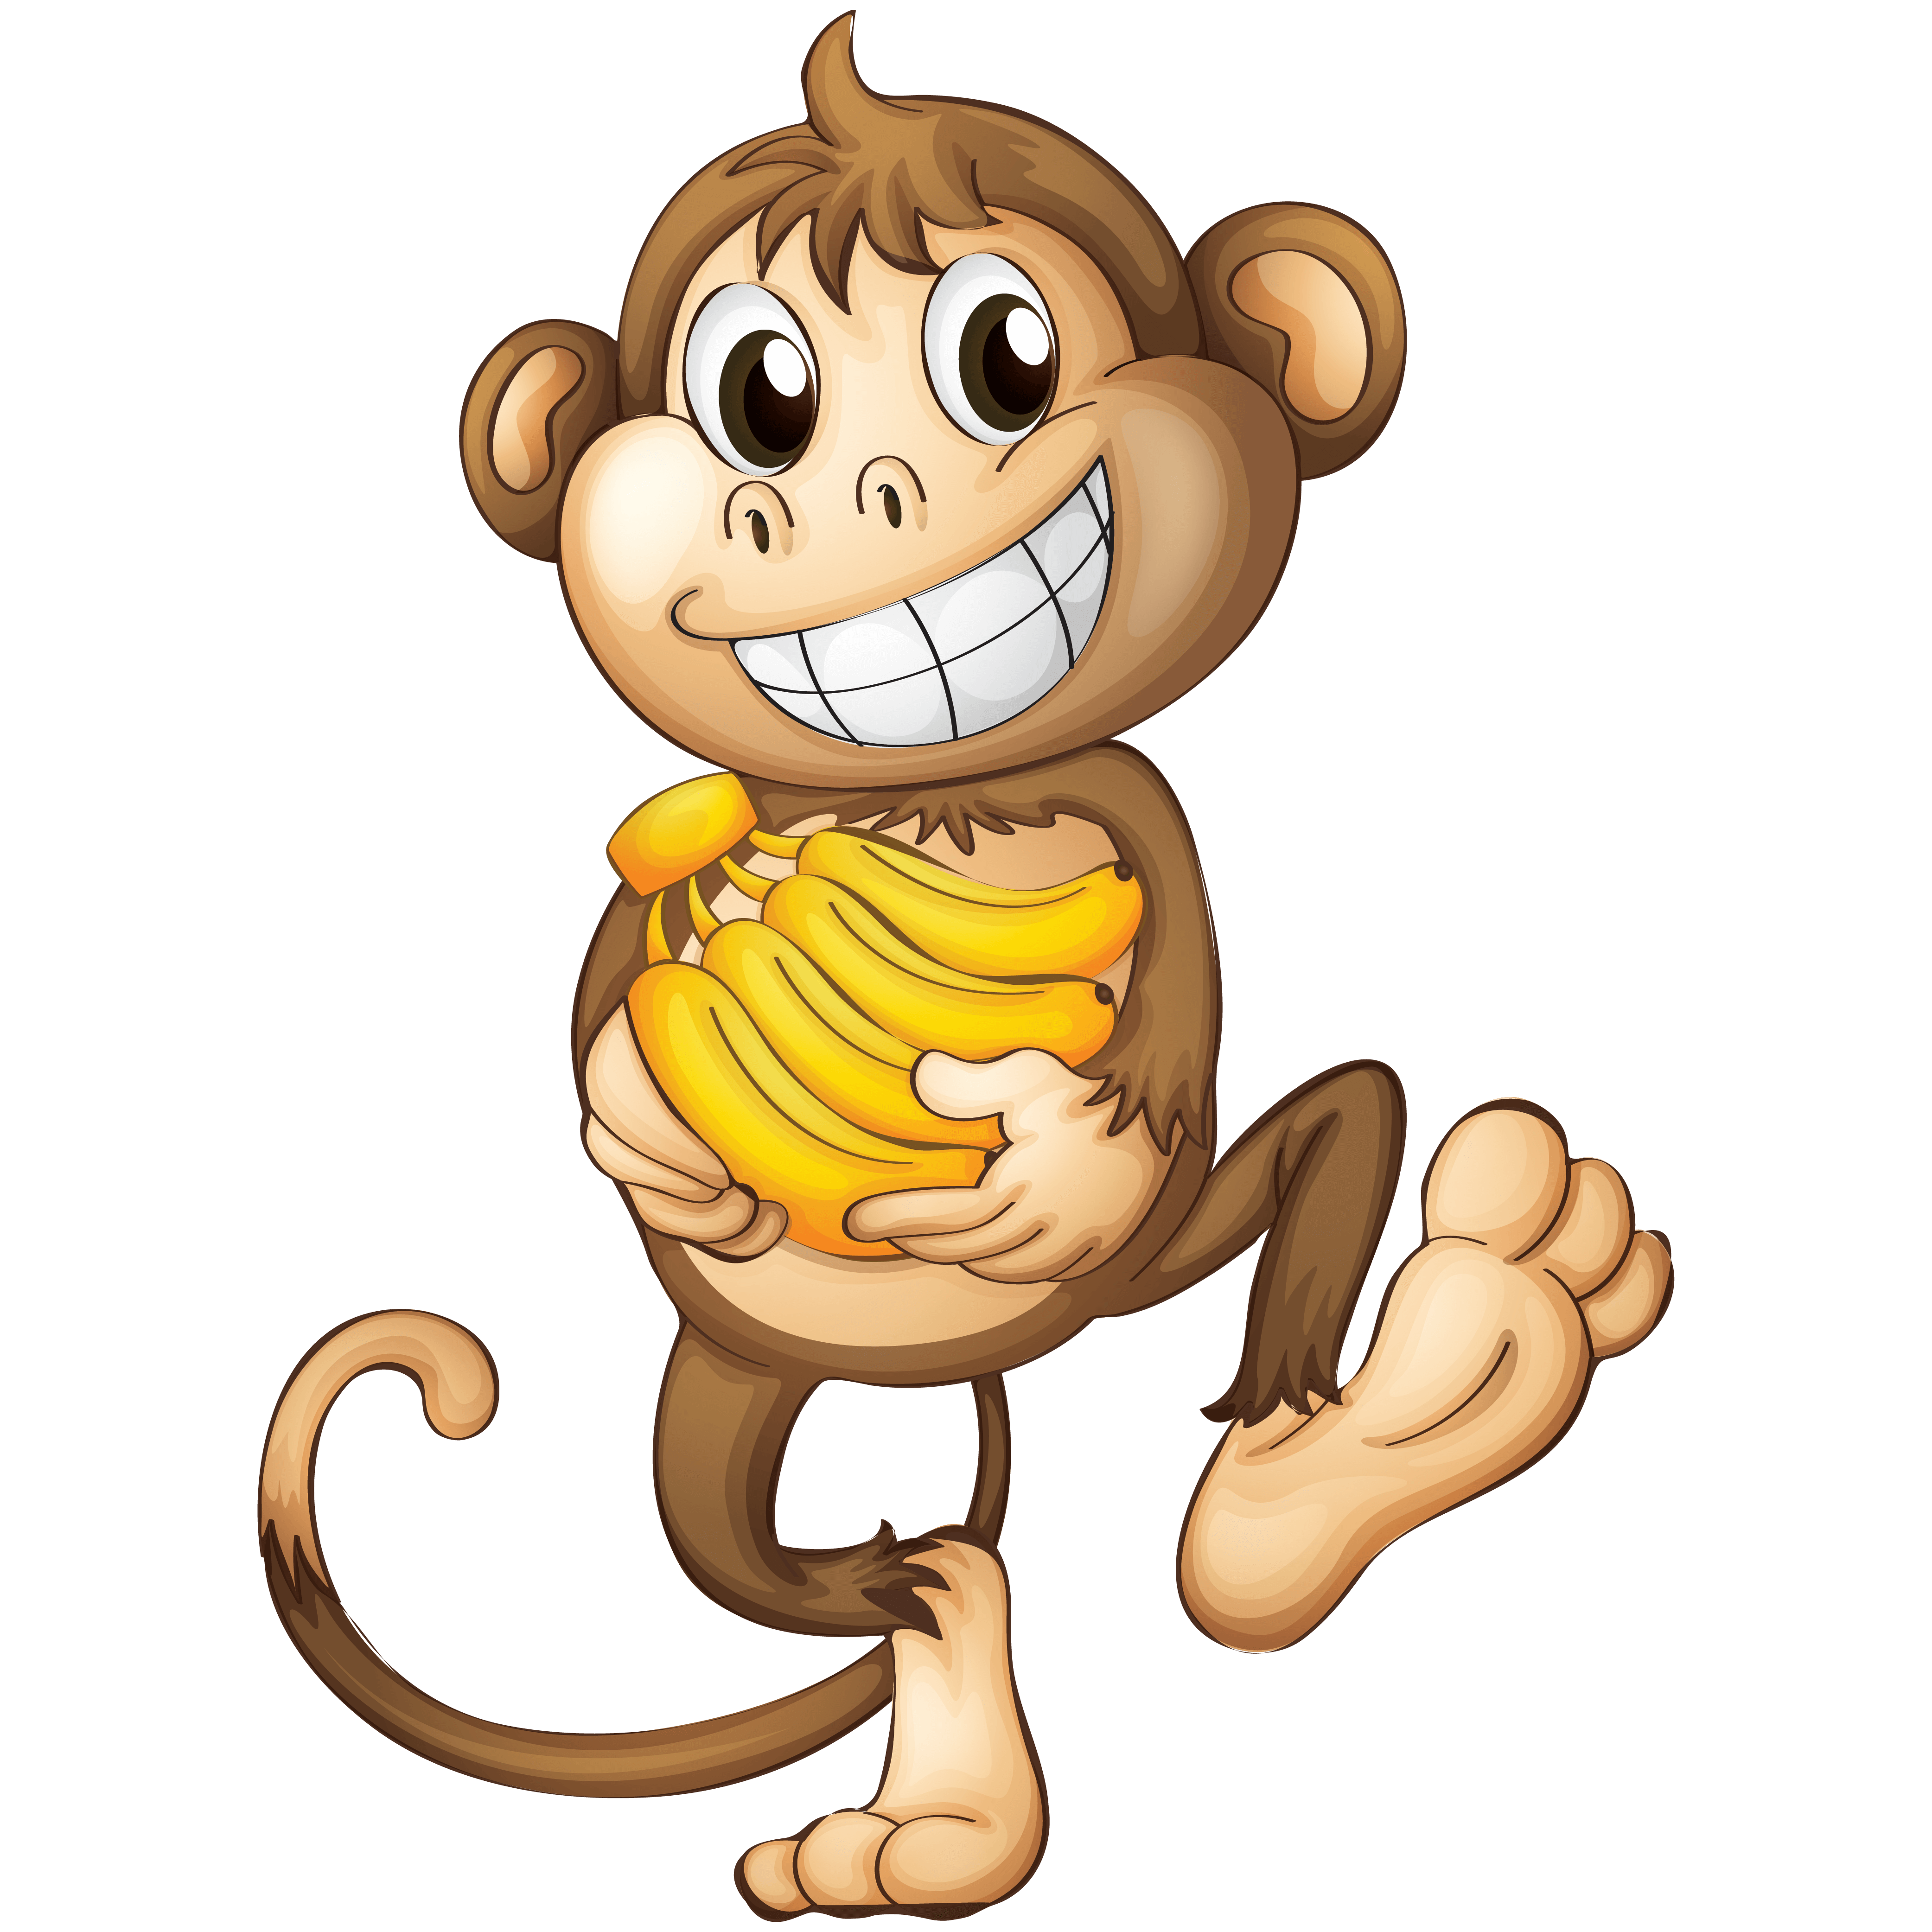 monkey png, monkey Clip Art, monkey png, monkey png Transparent Png, monkey png, transparent, background, free download, lergar monkey png, monkey png hd,